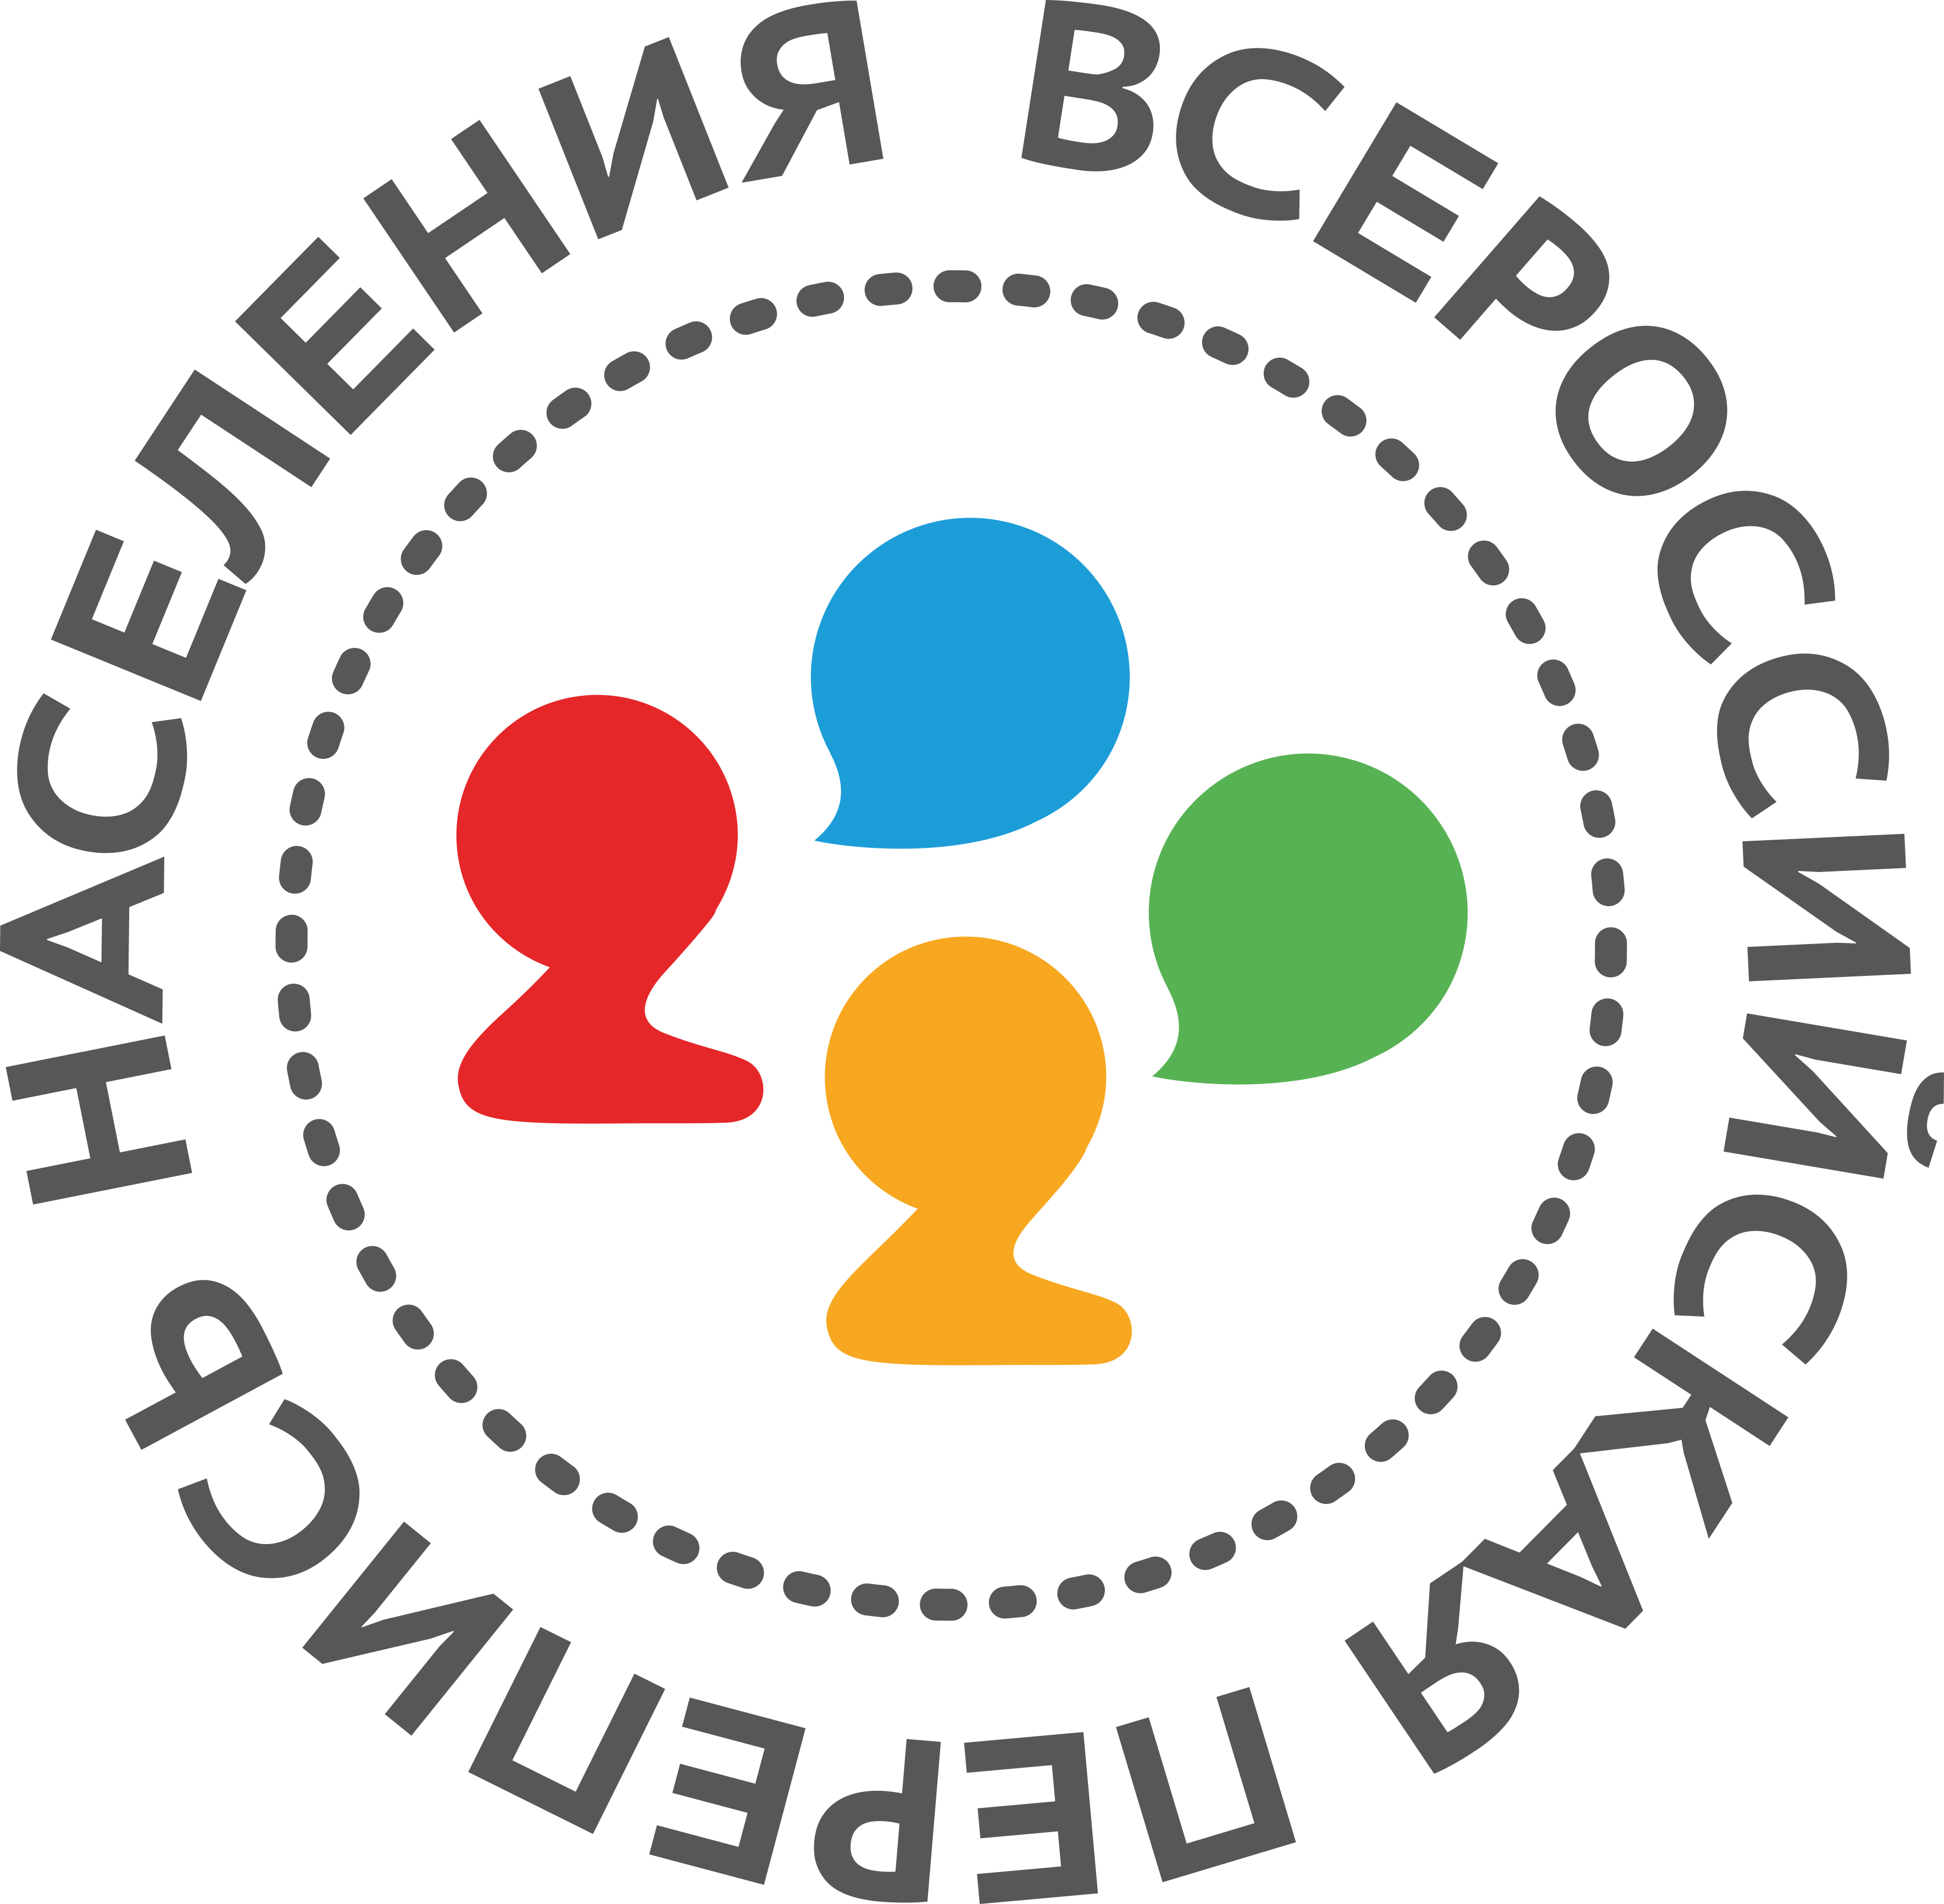 Перечень переписных участков на время проведения Всероссийской переписи населения 2020 года на территории Красногвардейского района Санкт-Петербурга